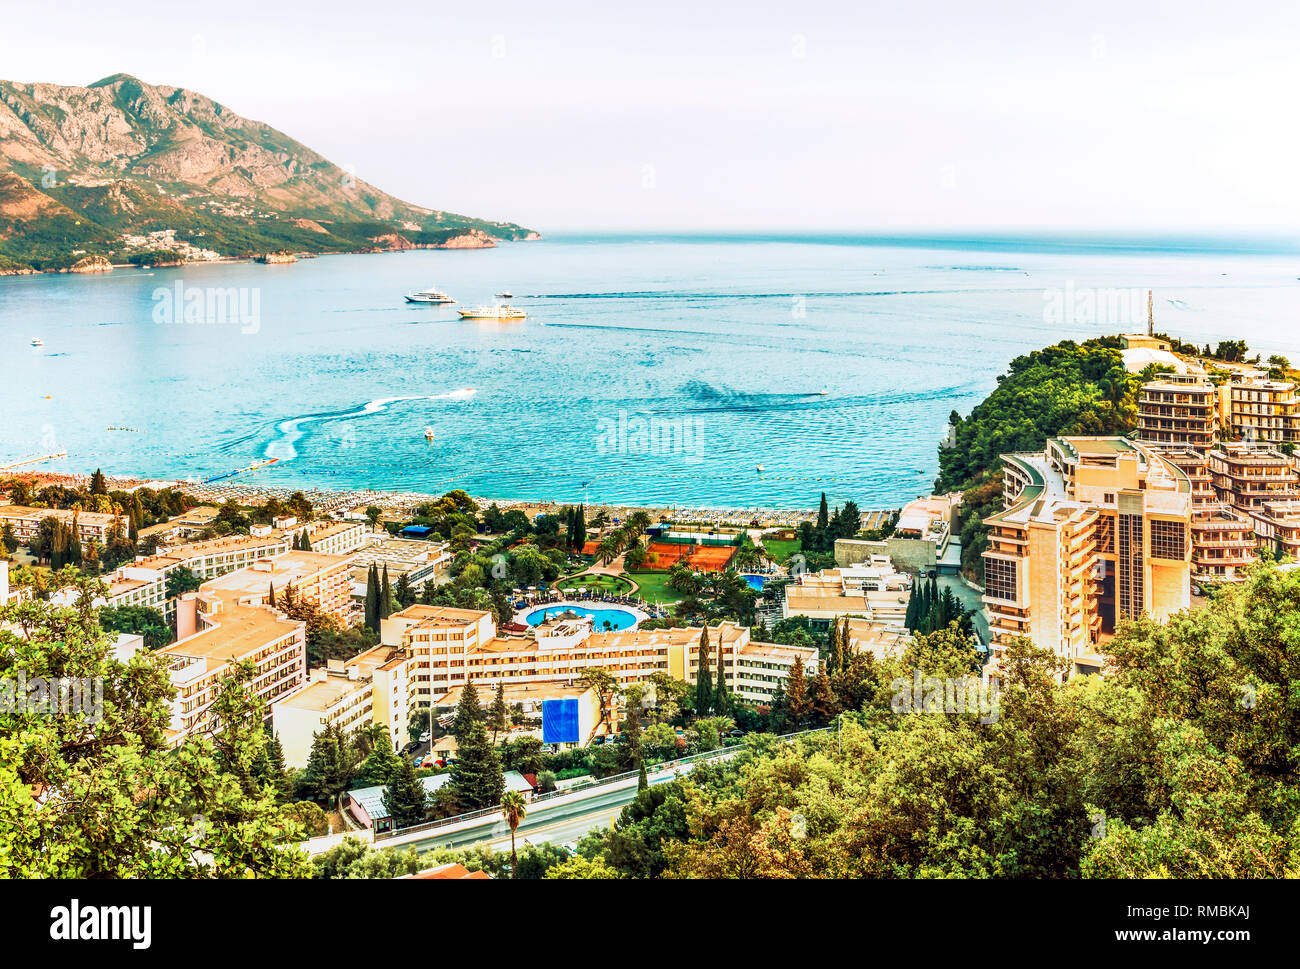 Visualizza gli alberghi e spiagge affollate della cittadina di Becici, Riviera di Budva, Montenegro. Foto Stock